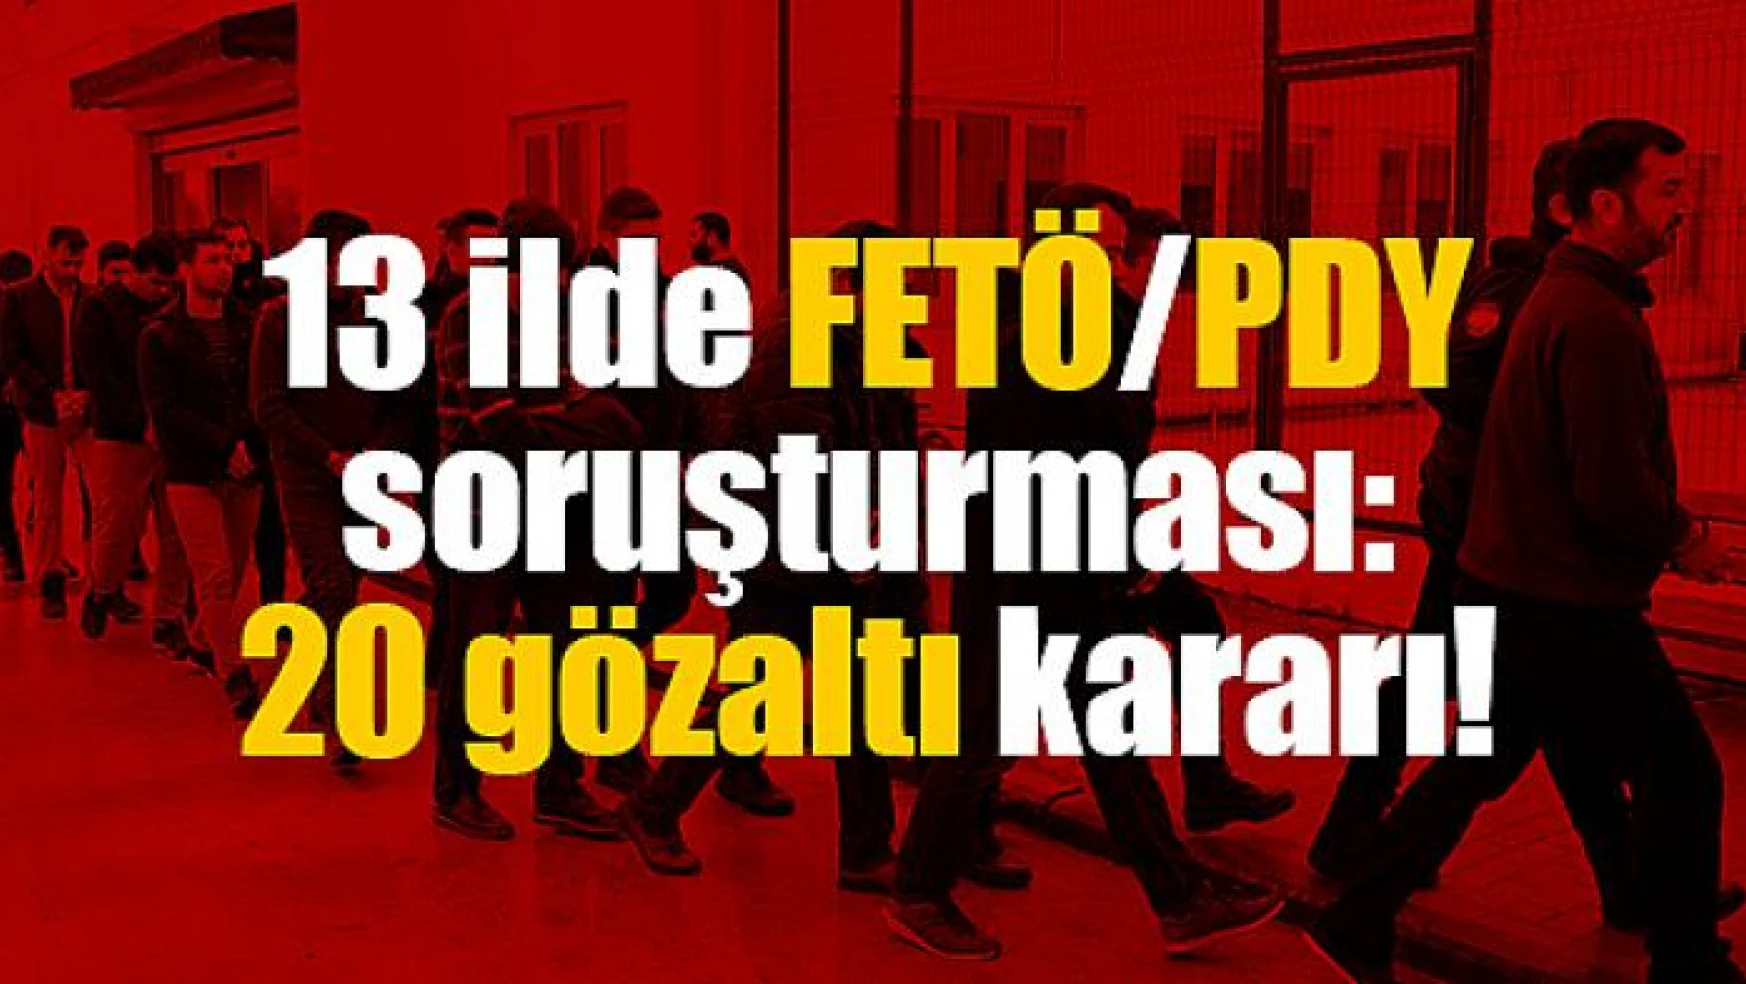 13 ilde FETÖ/PDY soruşturması: 20 gözaltı kararı!